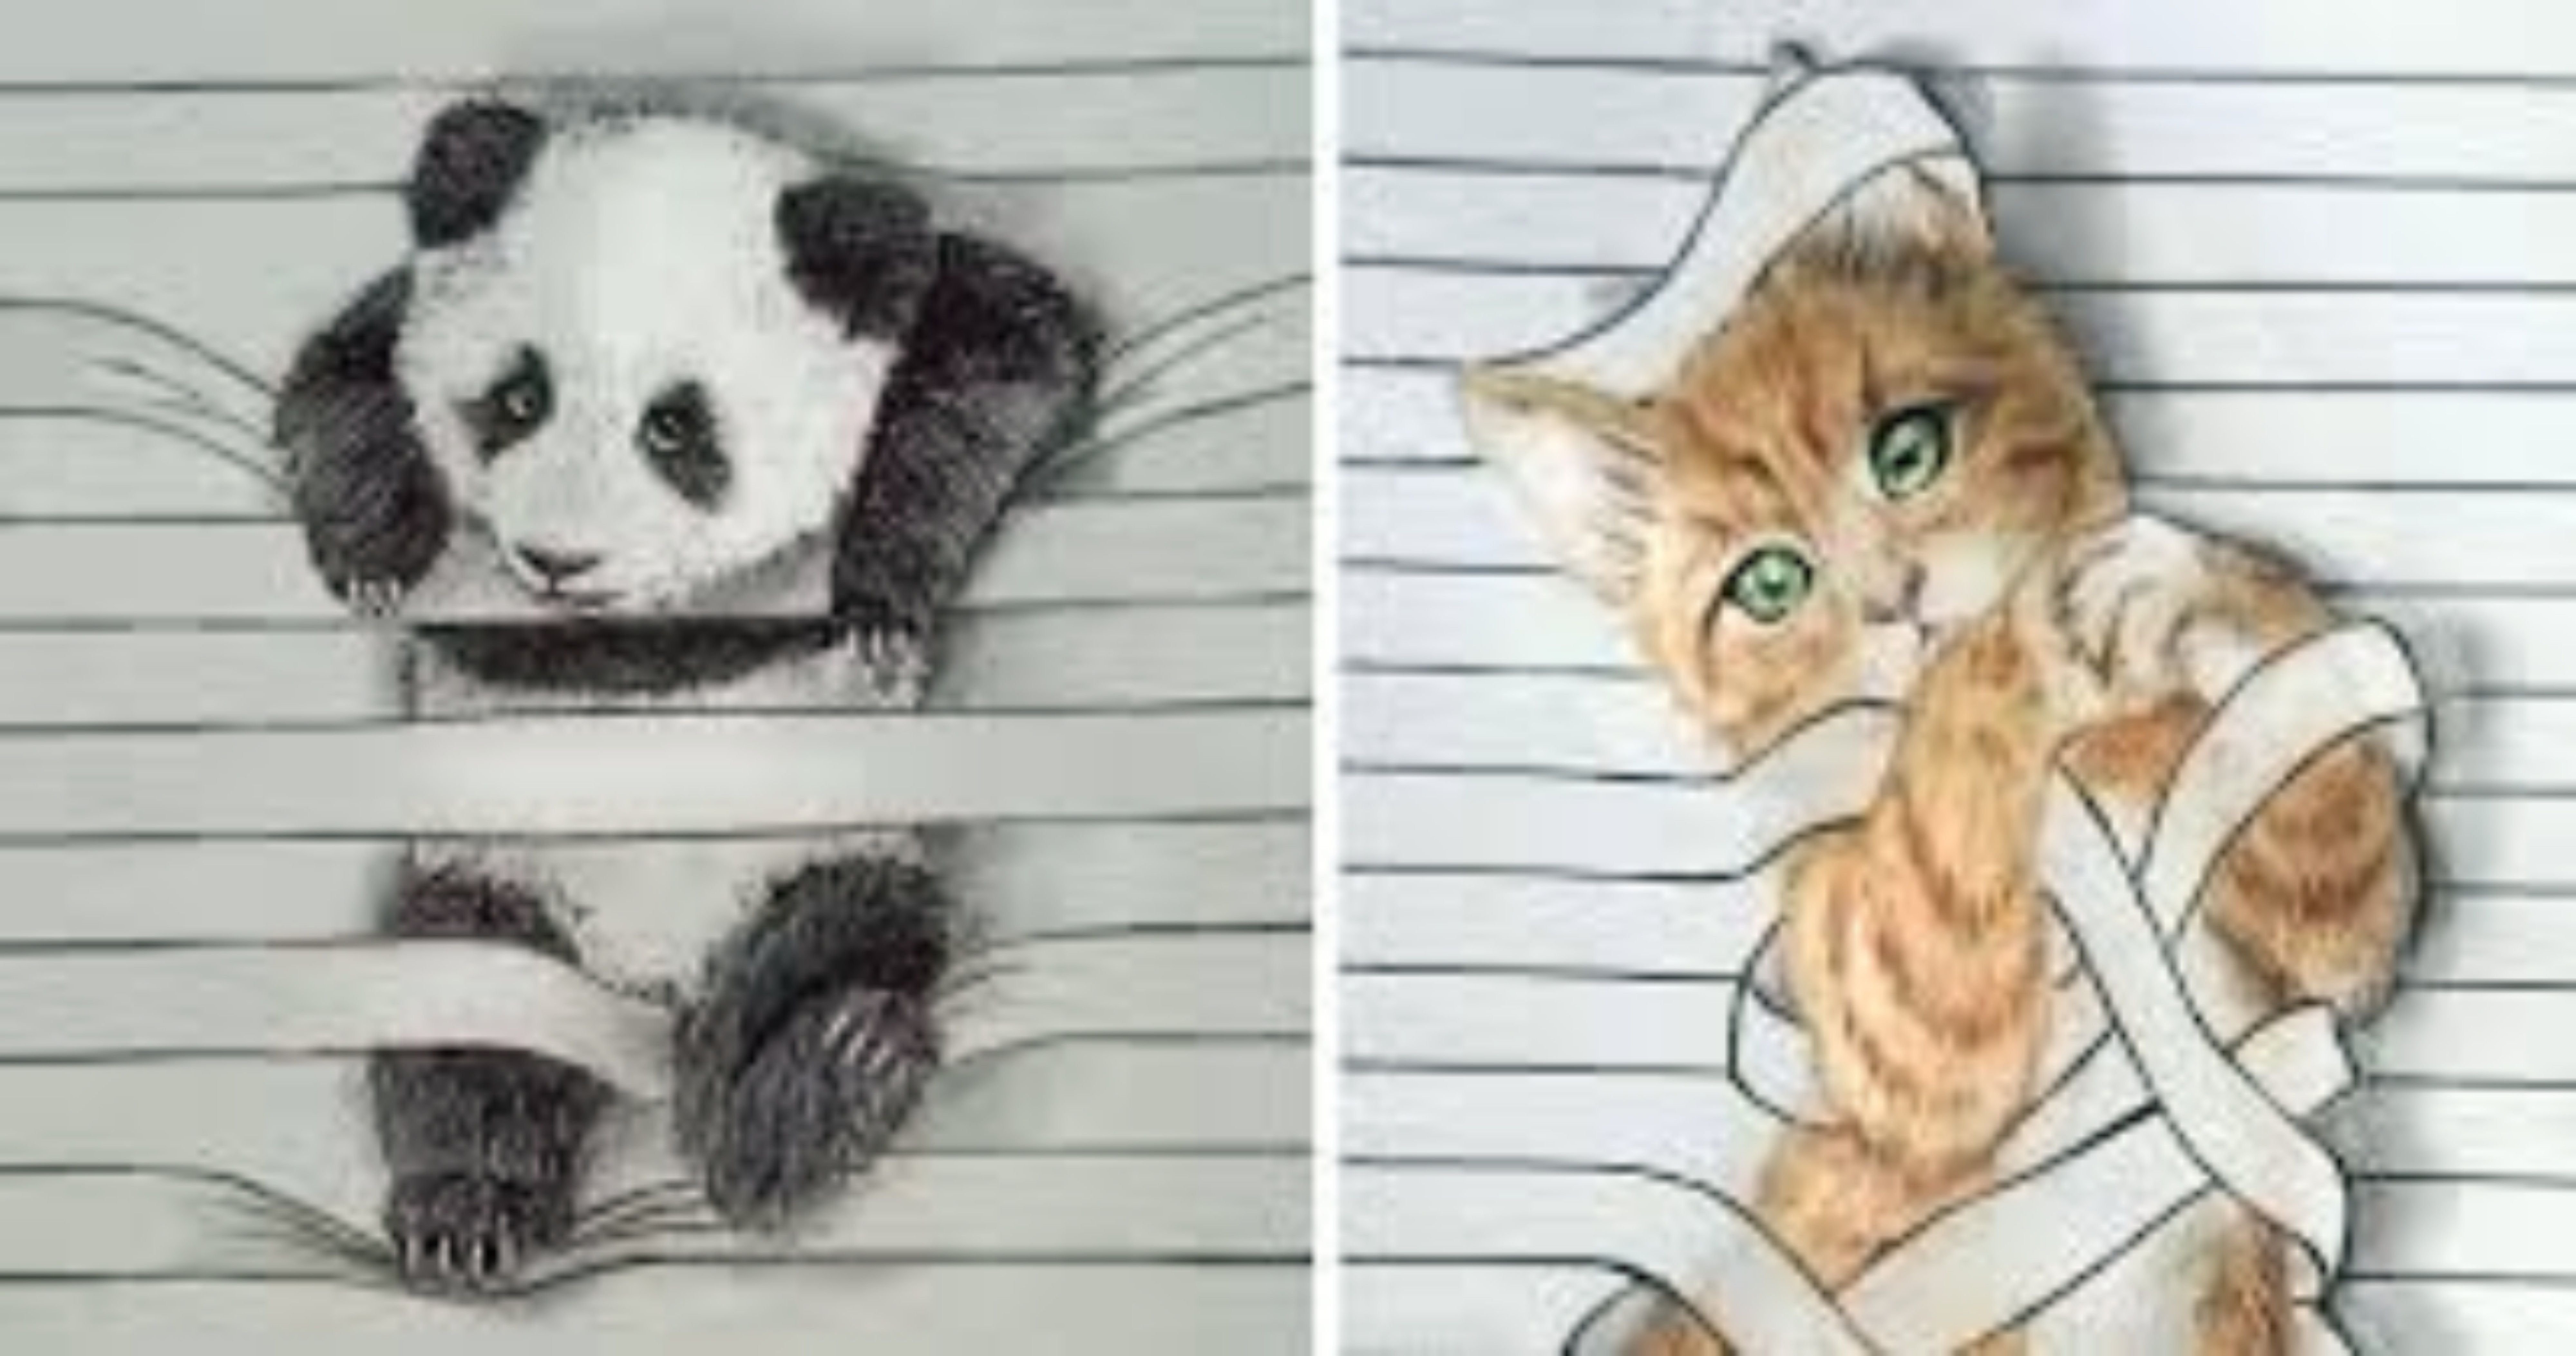 Рисунки для срисовки лёгкие и красивые милые животные